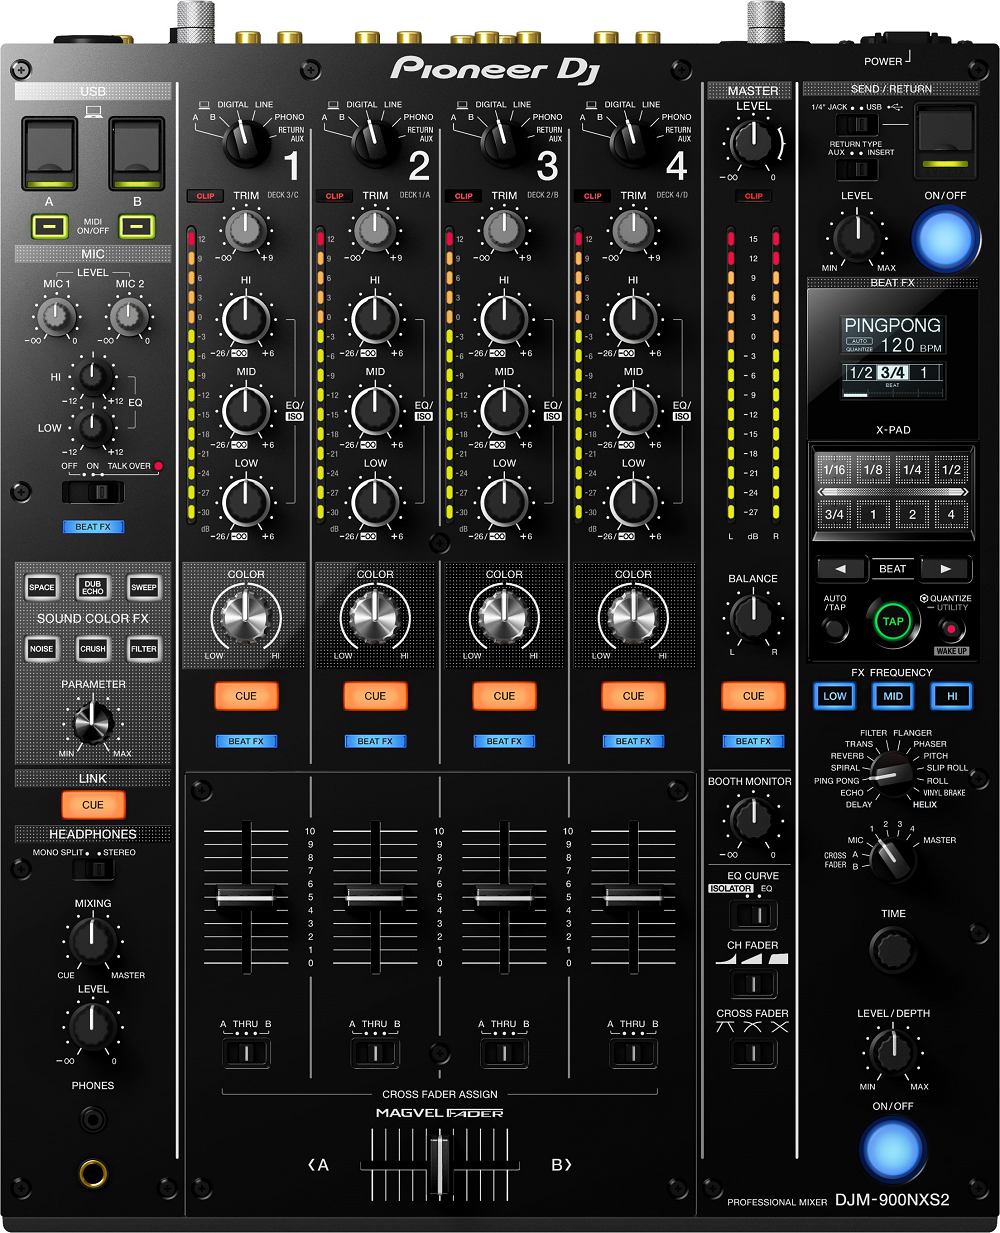 Pioneer Dj Djm-900nxs2 - DJ mixer - Main picture